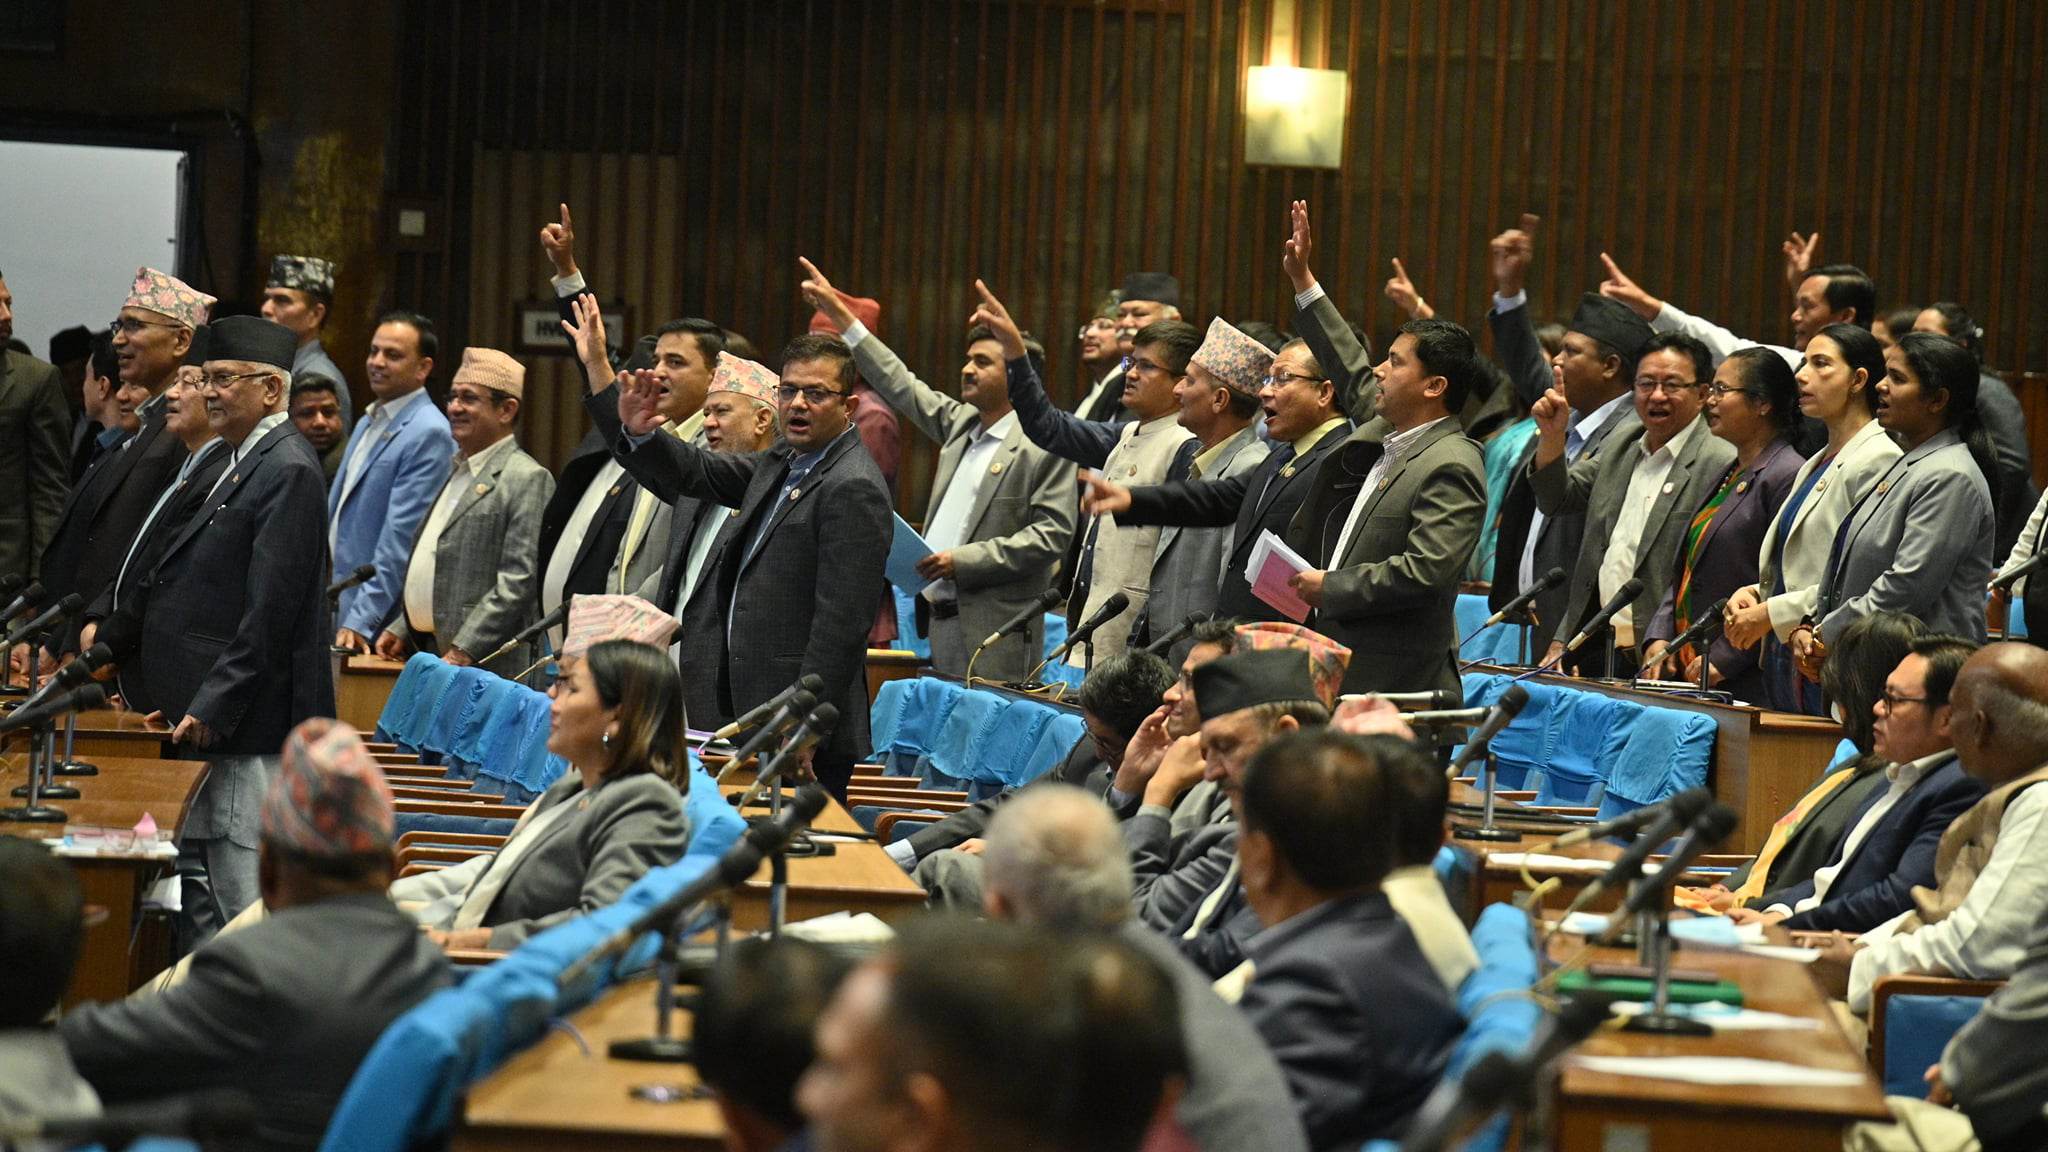 नागरिकता विधेयक र प्रधानमन्त्रीको अभिव्यक्तिले संसदमा हंगामा, एमाले, रास्वपा र राप्रपाद्वारा अवरोध 